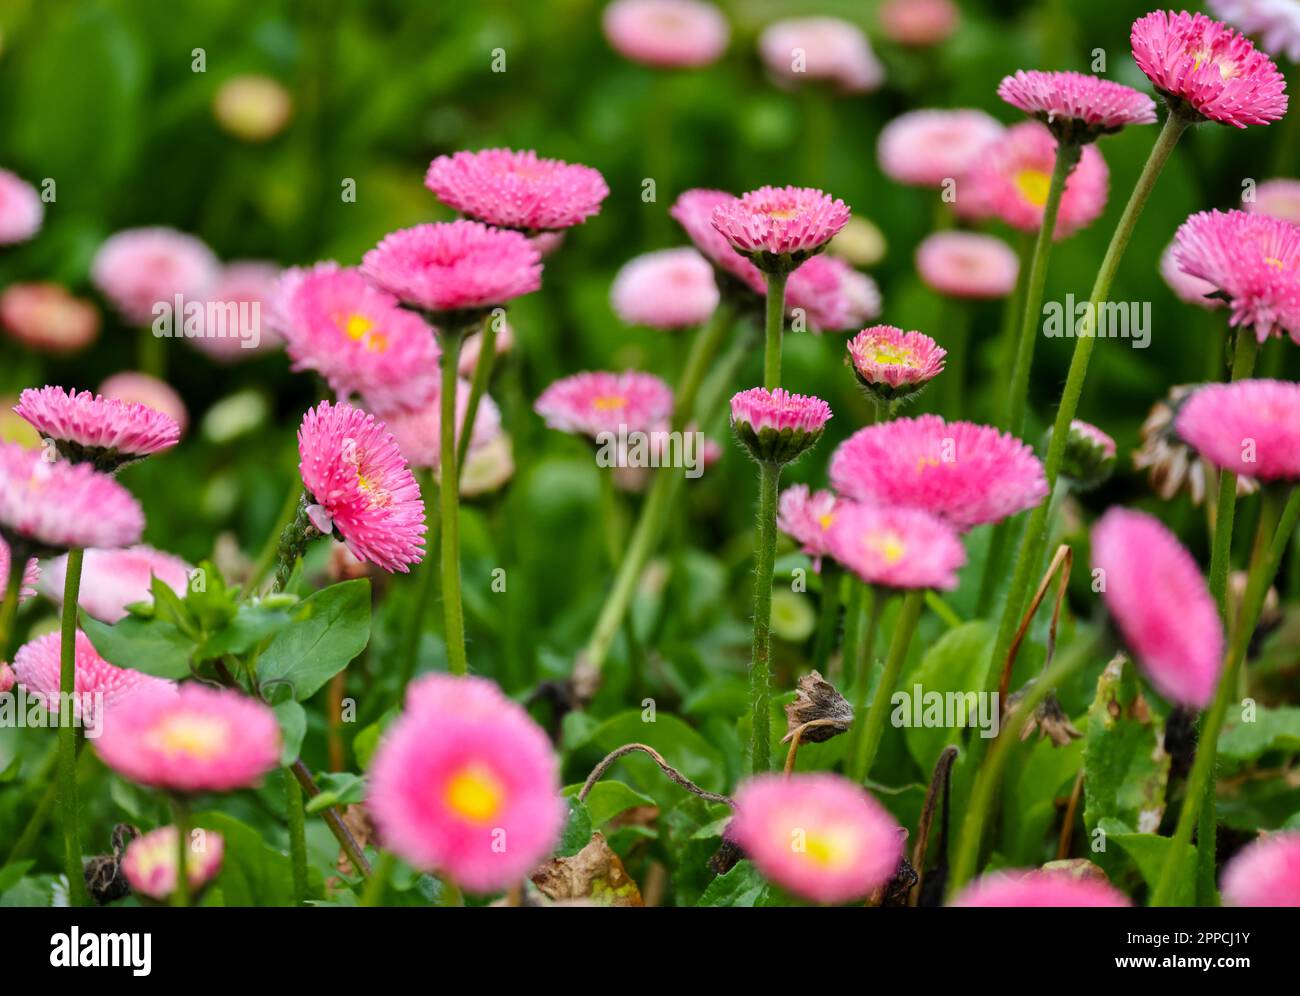 Bellis perennis 'Pomponette' mix. Pretty pink flowers, vibrant against dark green leaves. Dublin, Ireland Stock Photo